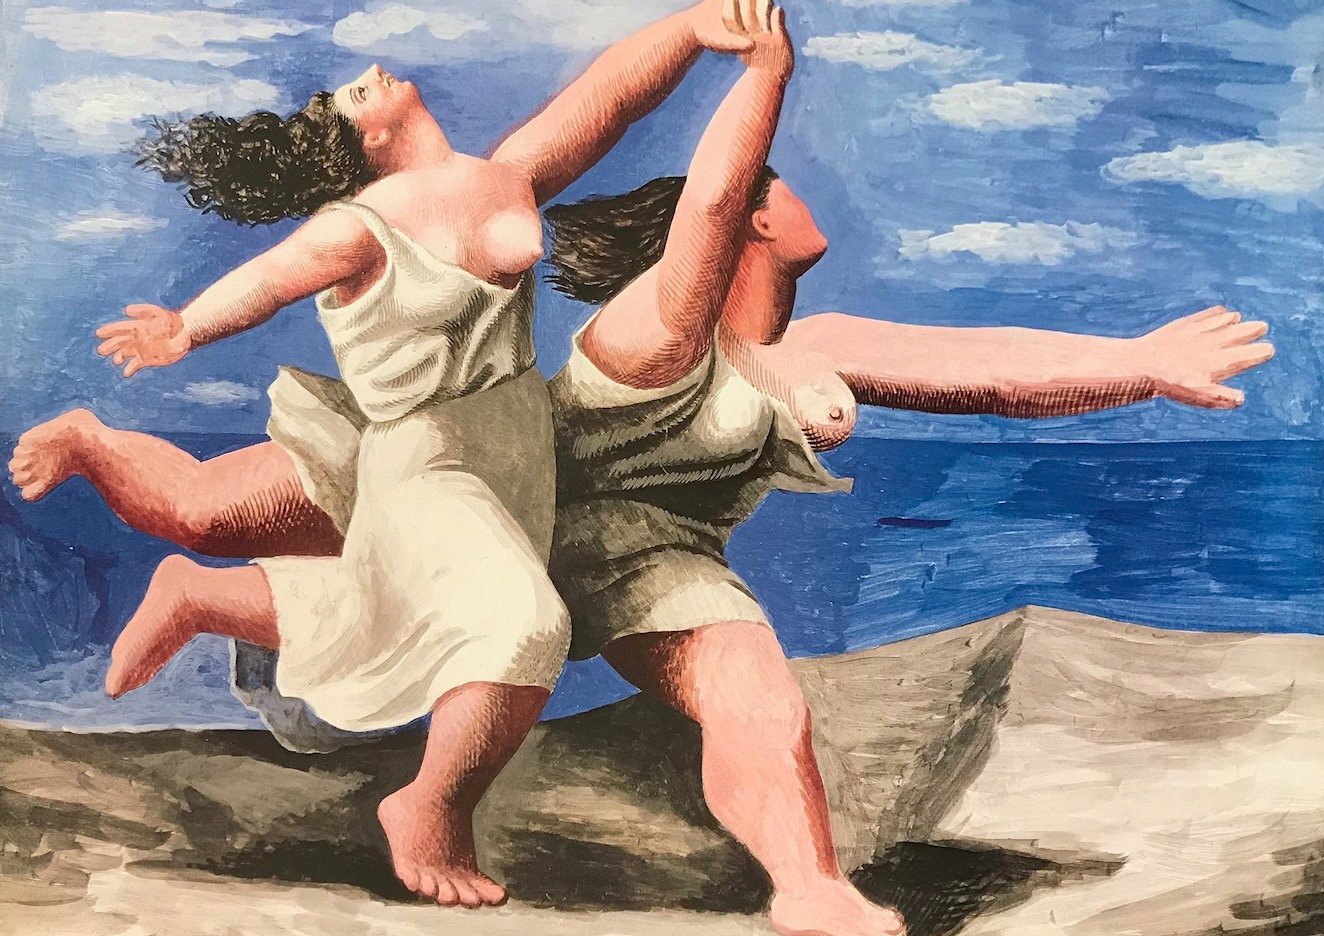 Picasso Poster "Deux femmes courant sur la plage"